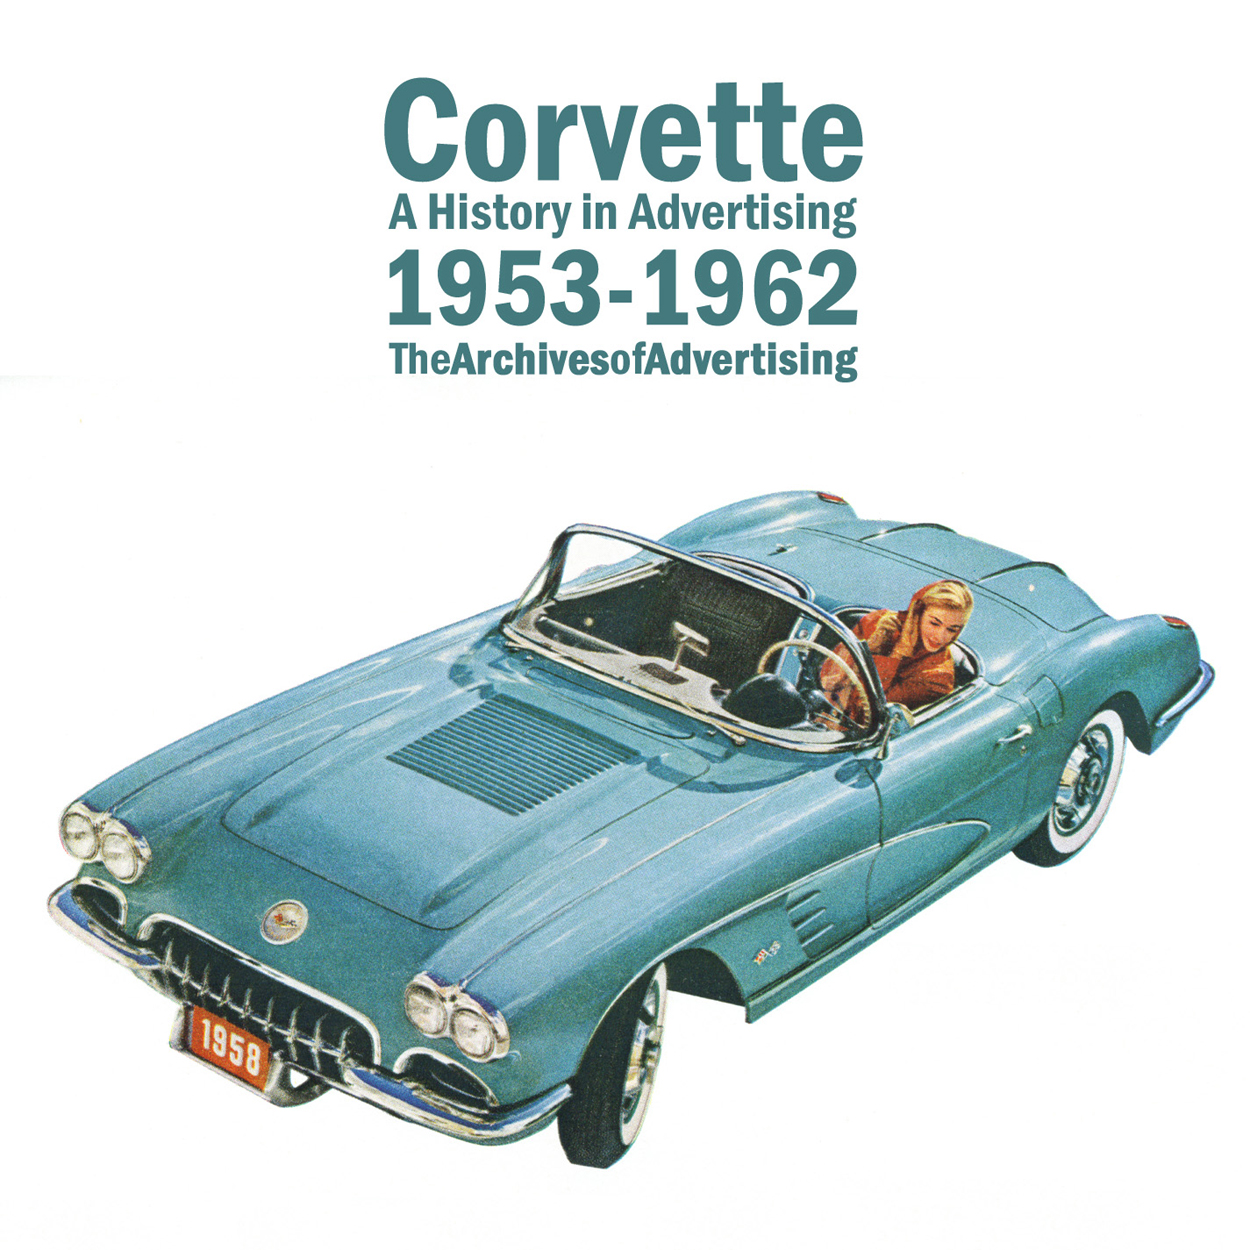 1961 Corvette Convertible Streets Of San Francisco Original Print Ad 8.5 x 11" 